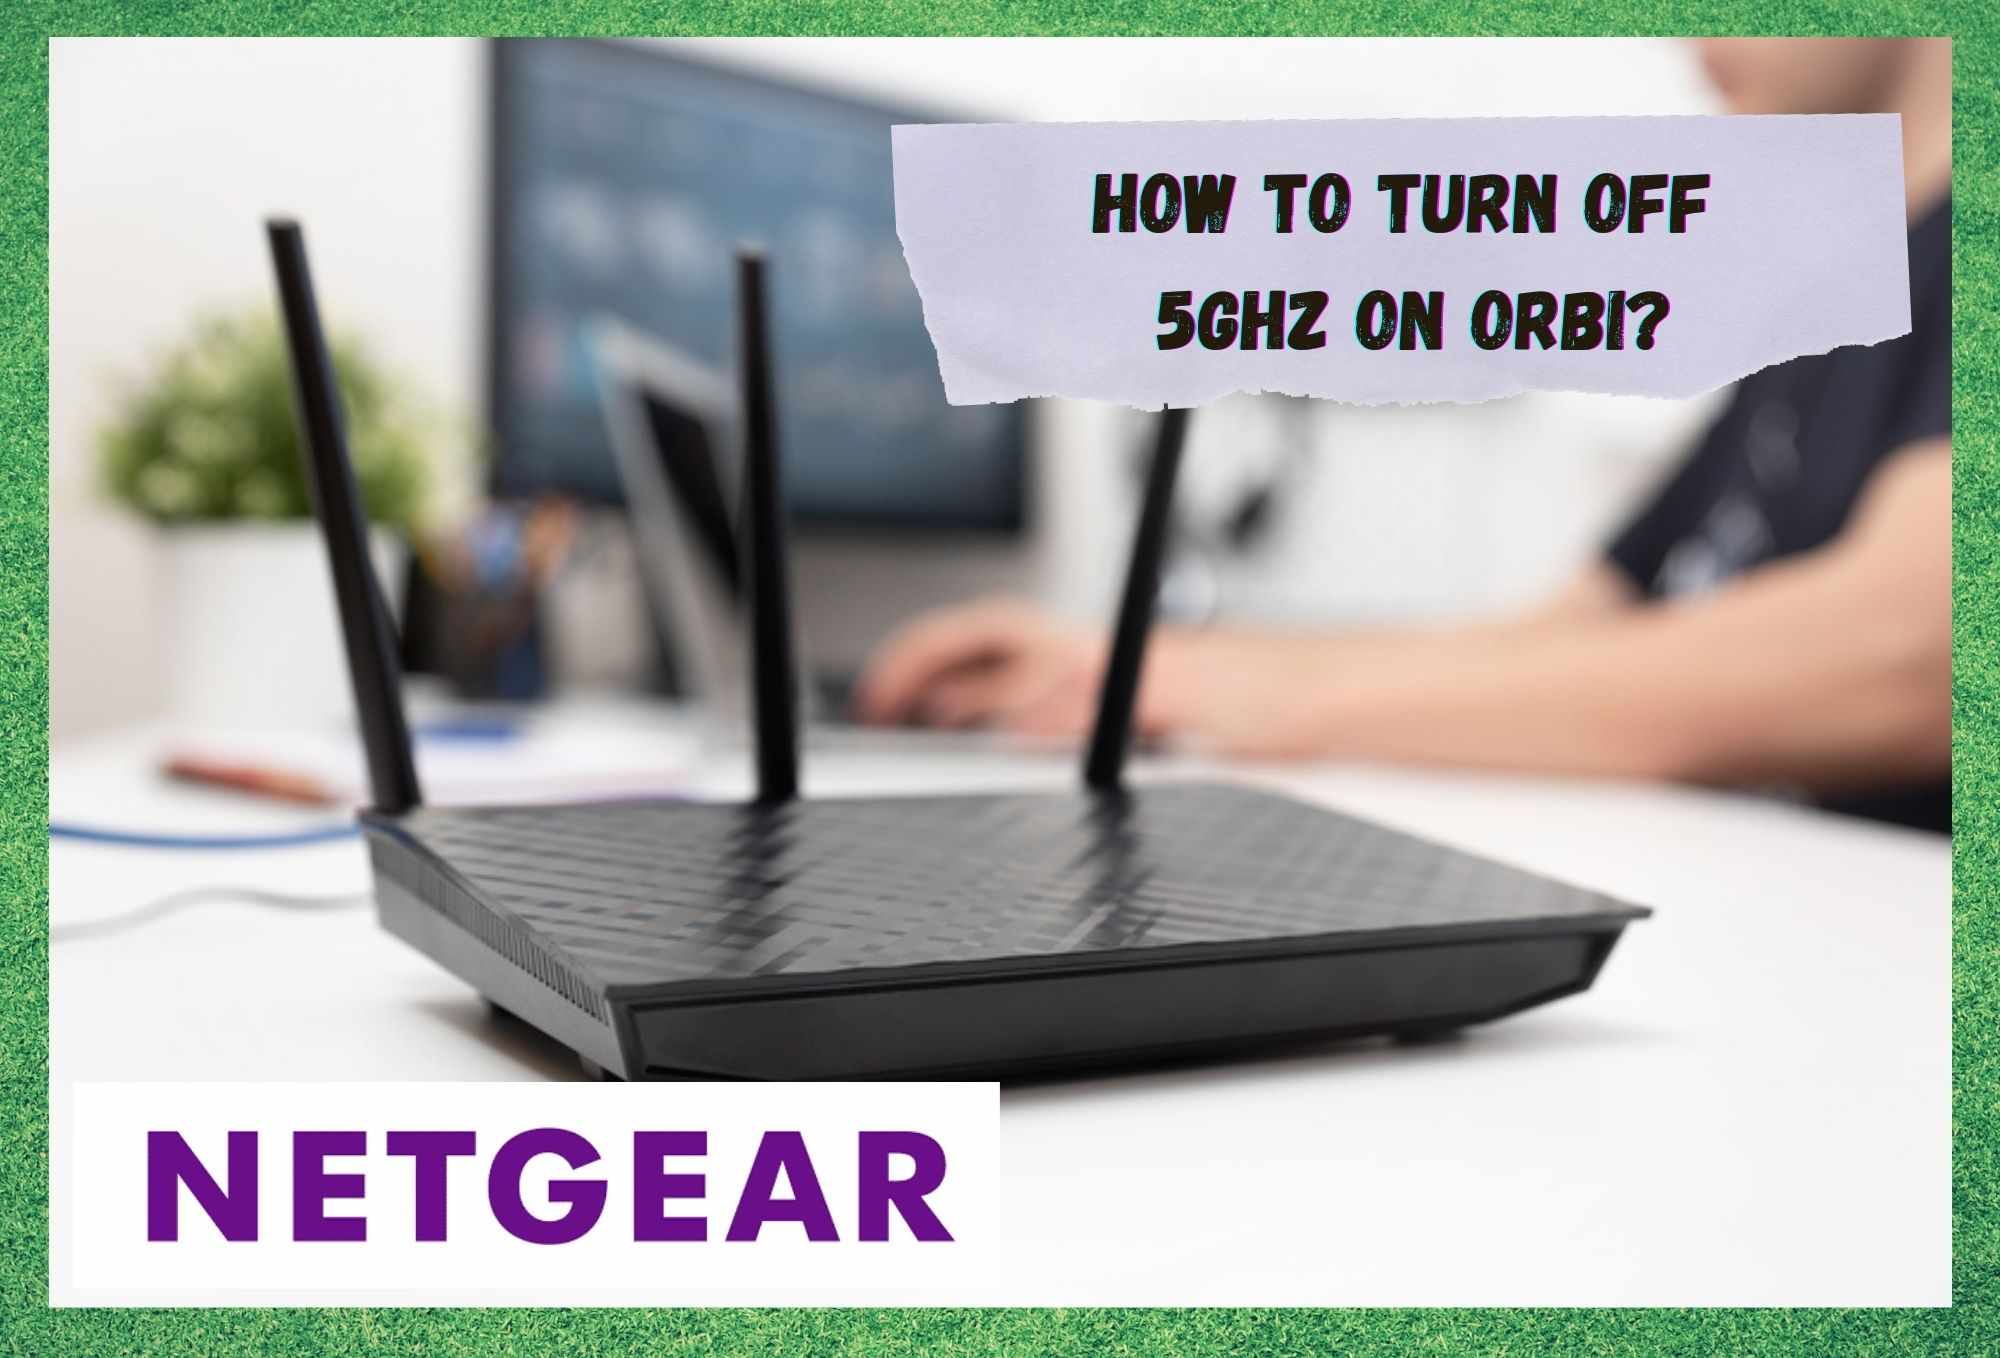 Làm cách nào để tắt Netgear Orbi 5GHz? (Giải thích)